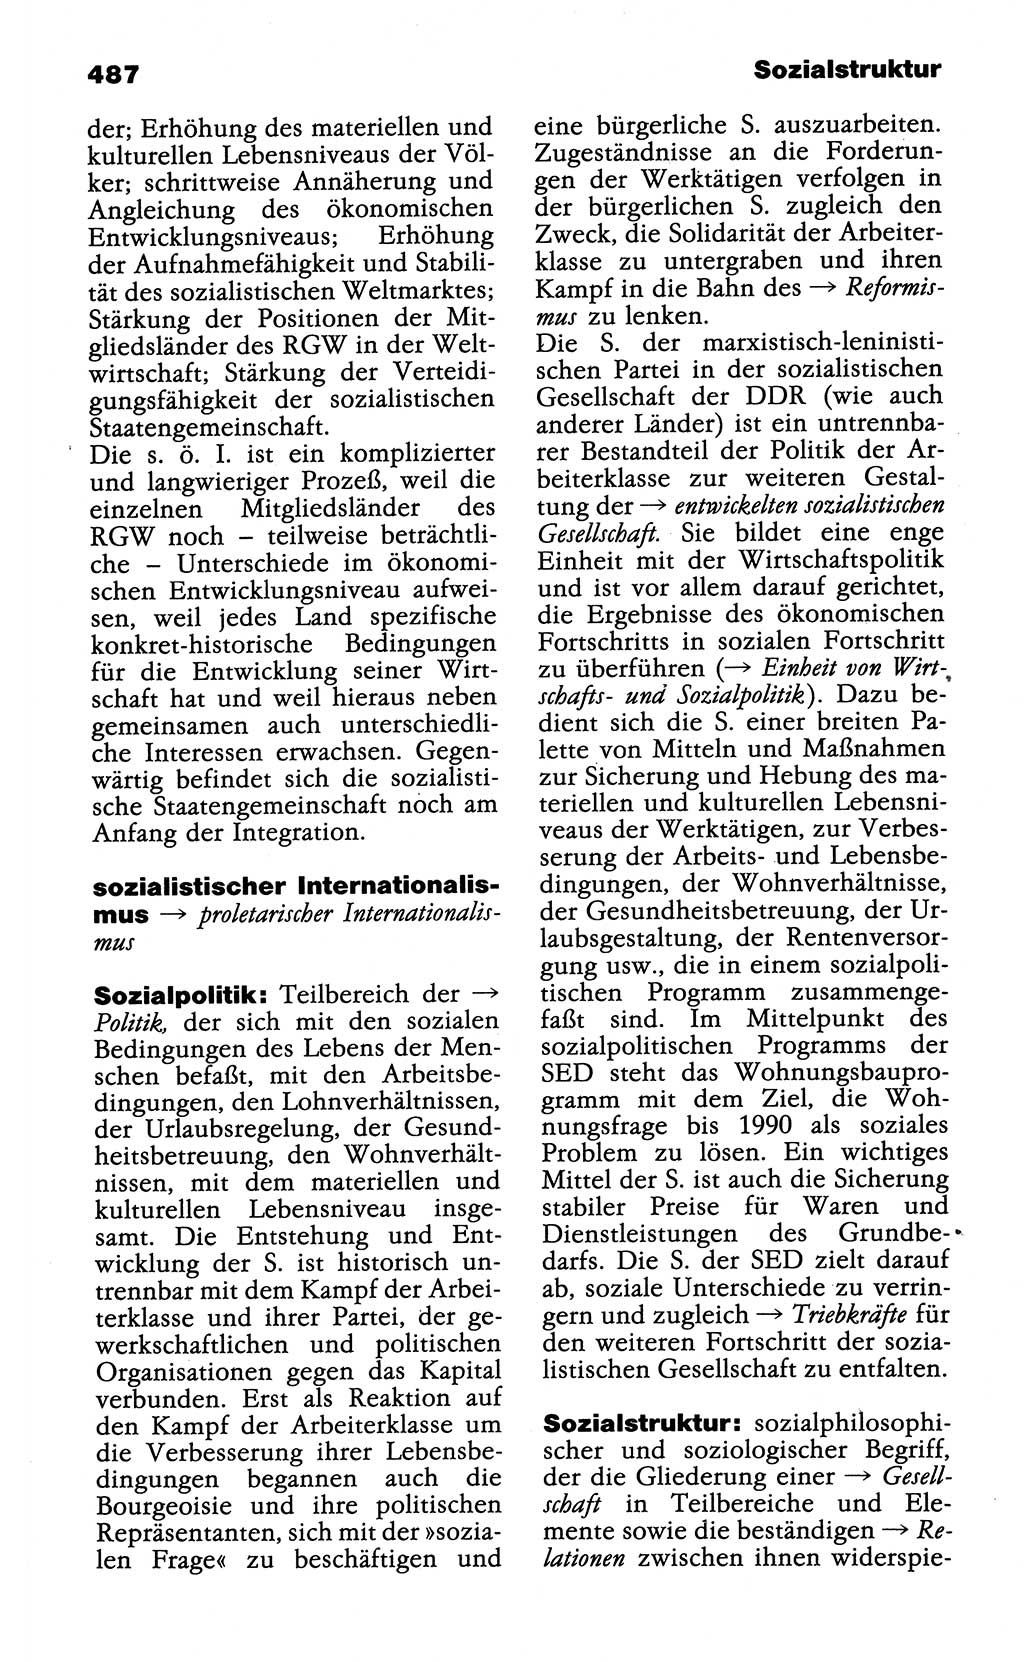 Wörterbuch der marxistisch-leninistischen Philosophie [Deutsche Demokratische Republik (DDR)] 1985, Seite 487 (Wb. ML Phil. DDR 1985, S. 487)